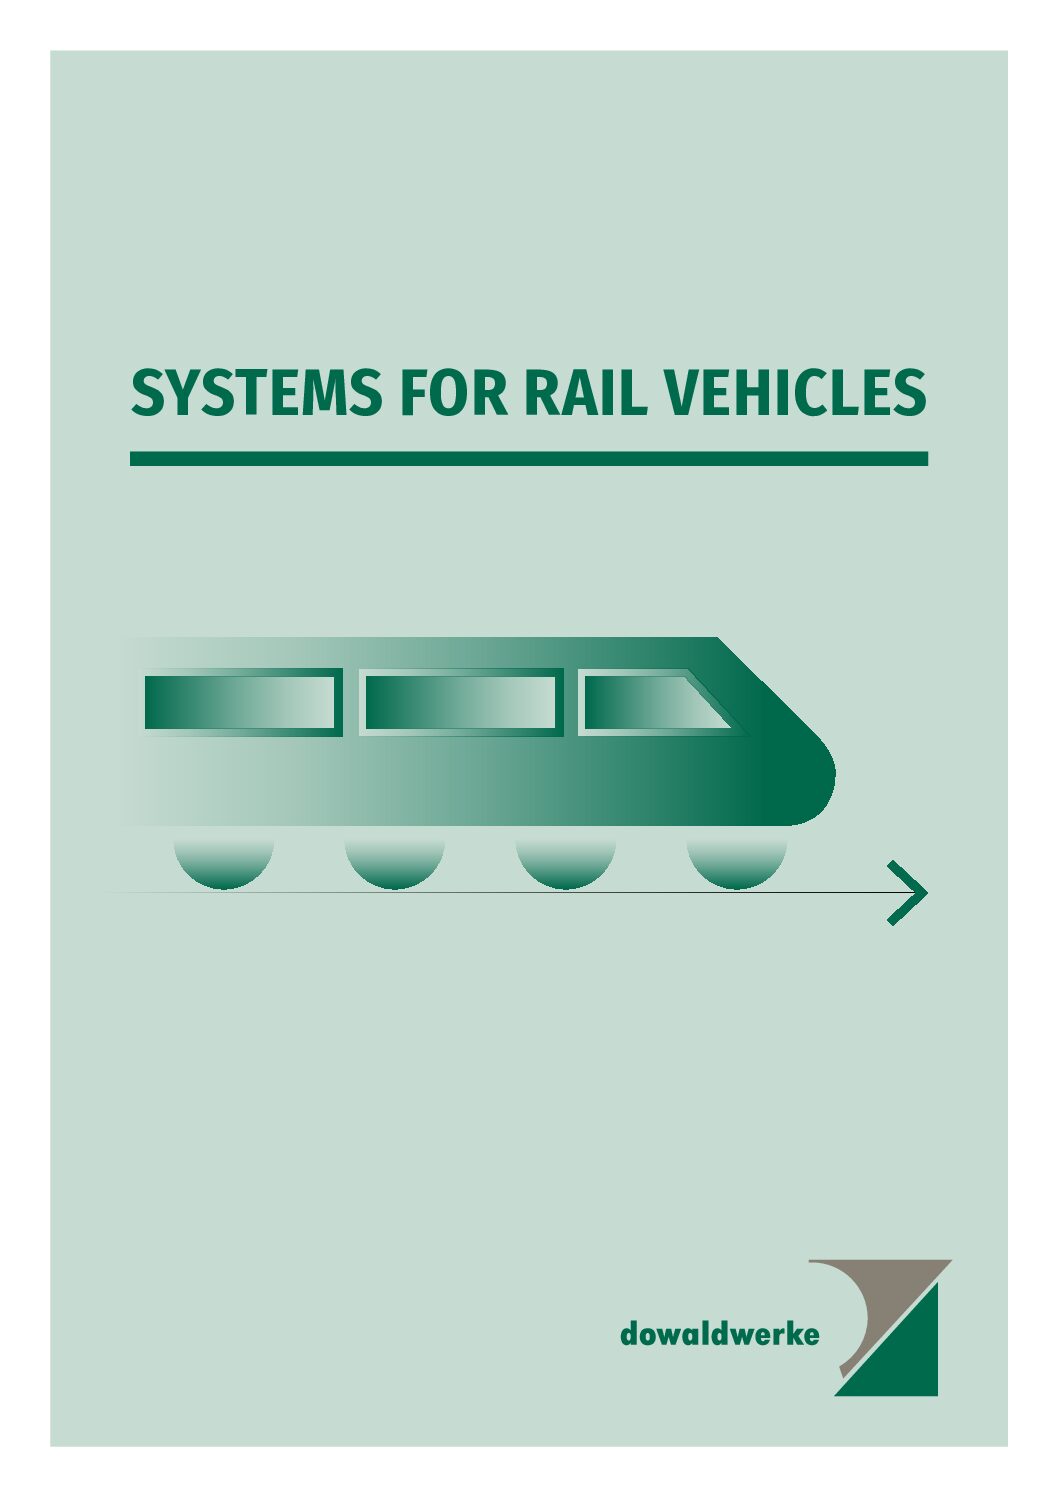 Dowaldwerke Railway Brochure 2021